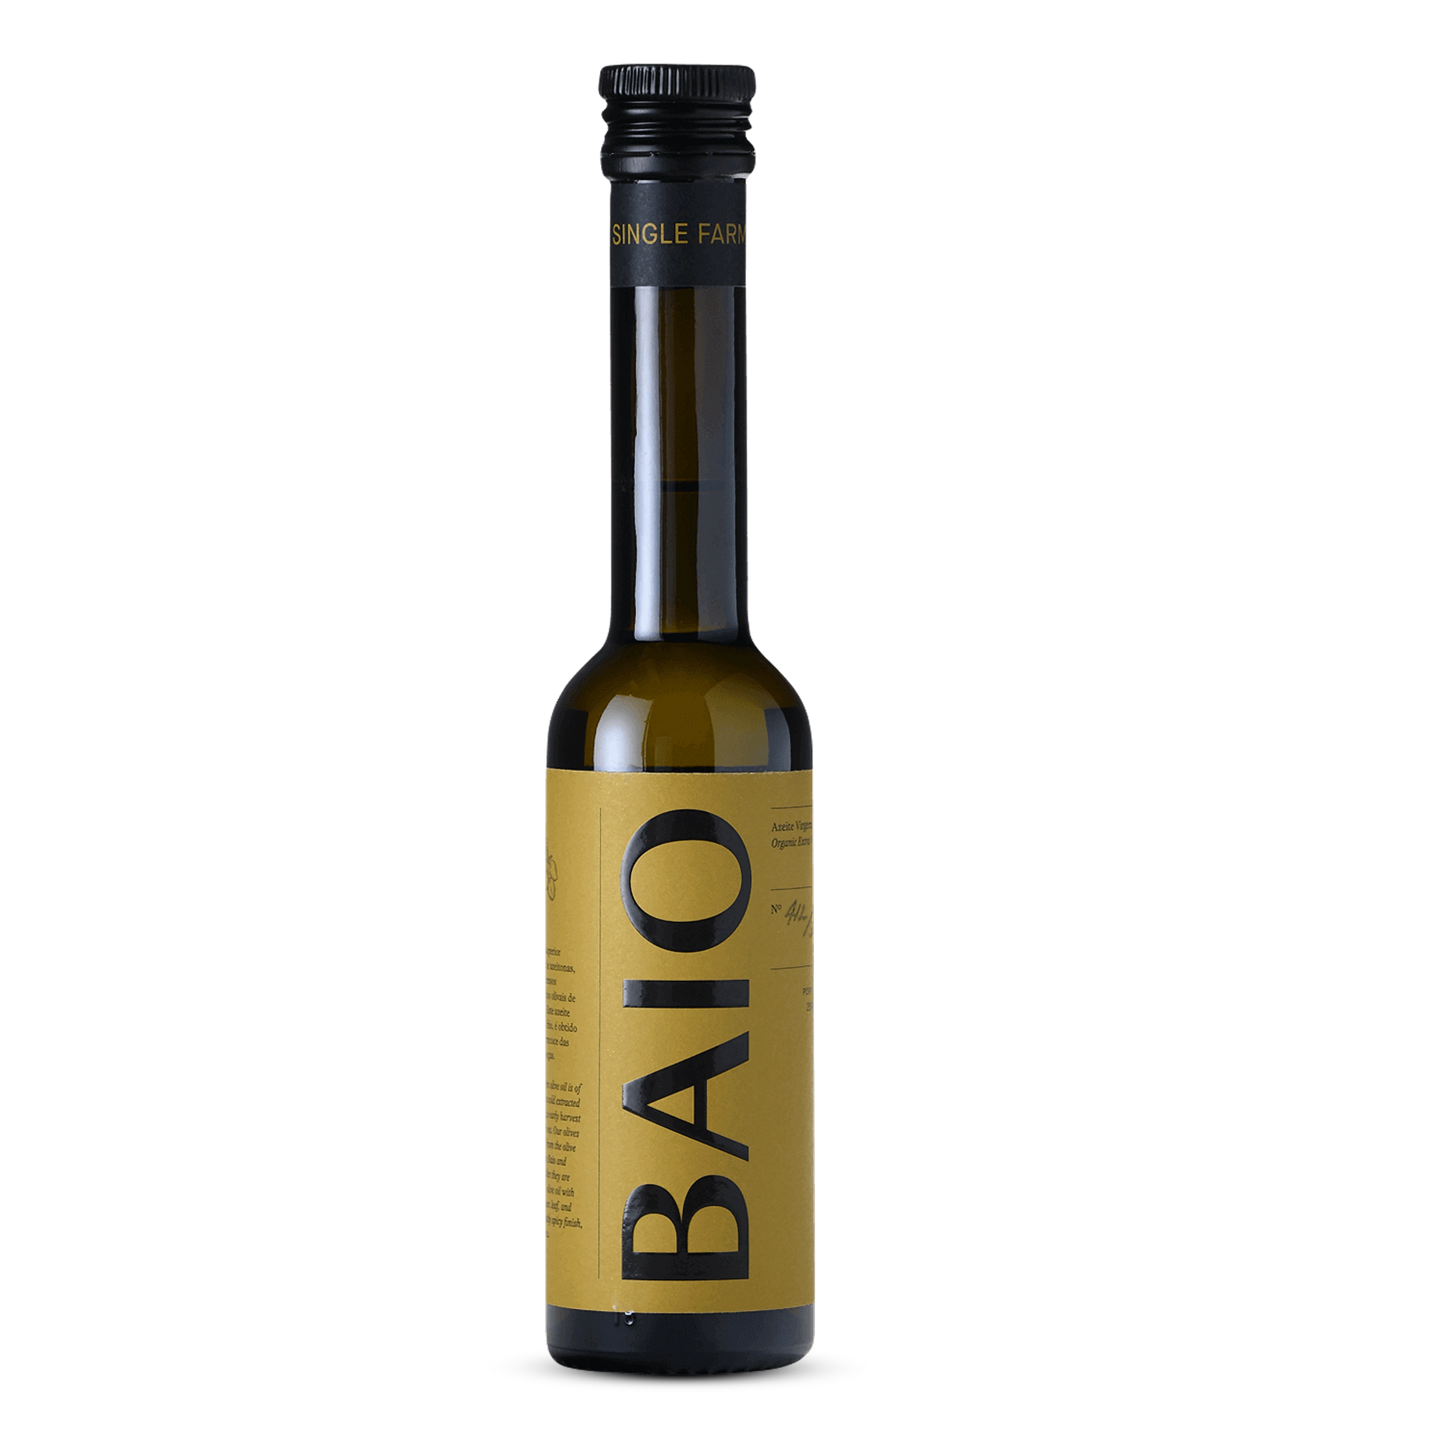 Steun KVC Deerlijk Sport - BAIO olijfolie - Premium